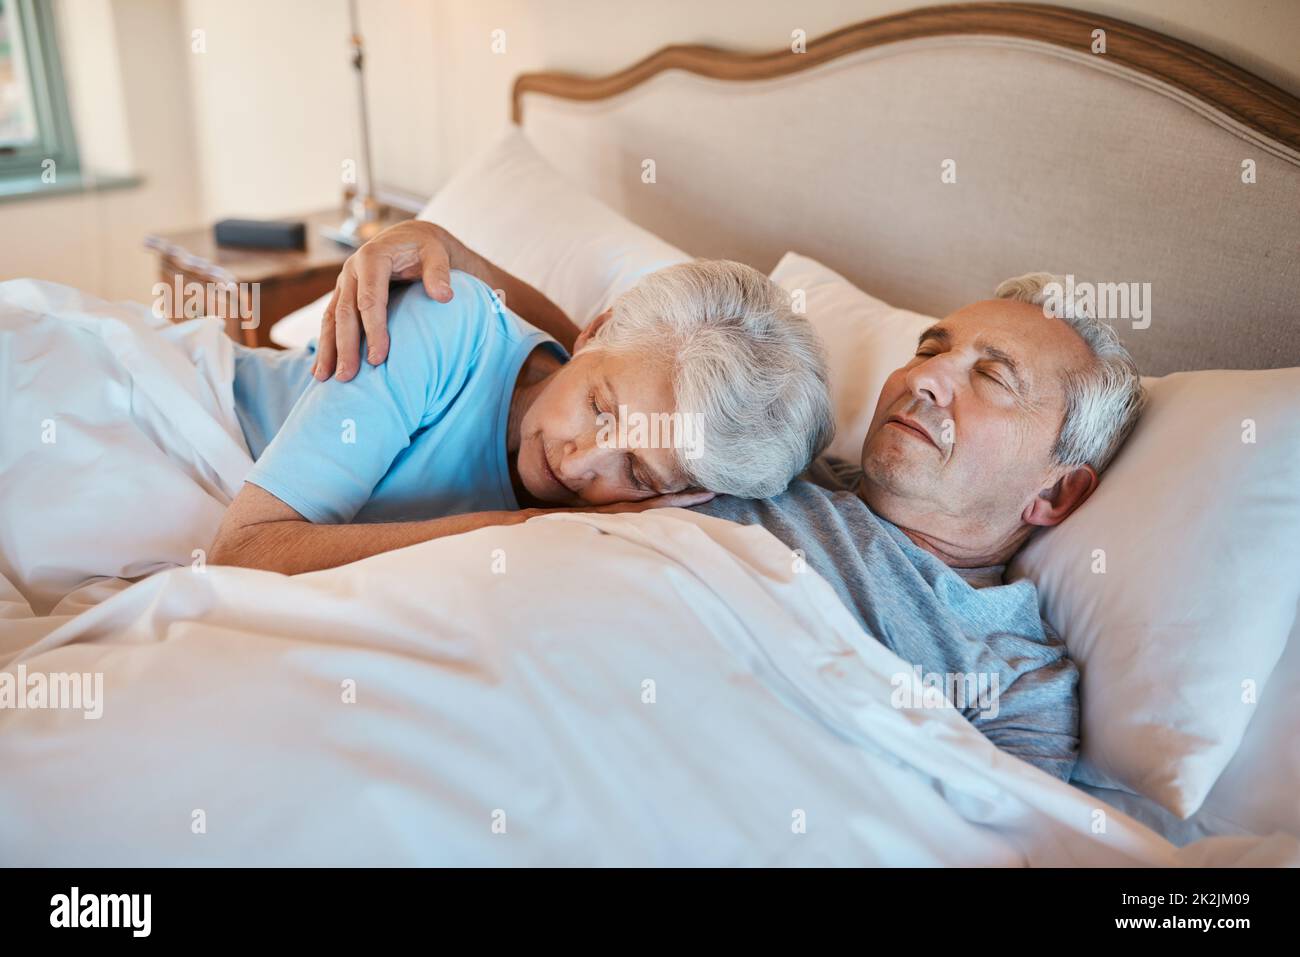 J'ai écouté ce battement de cœur pendant des années. Photo courte d'un couple affectueux et âgé se câliner tout en dormant au lit dans une maison de soins infirmiers. Banque D'Images